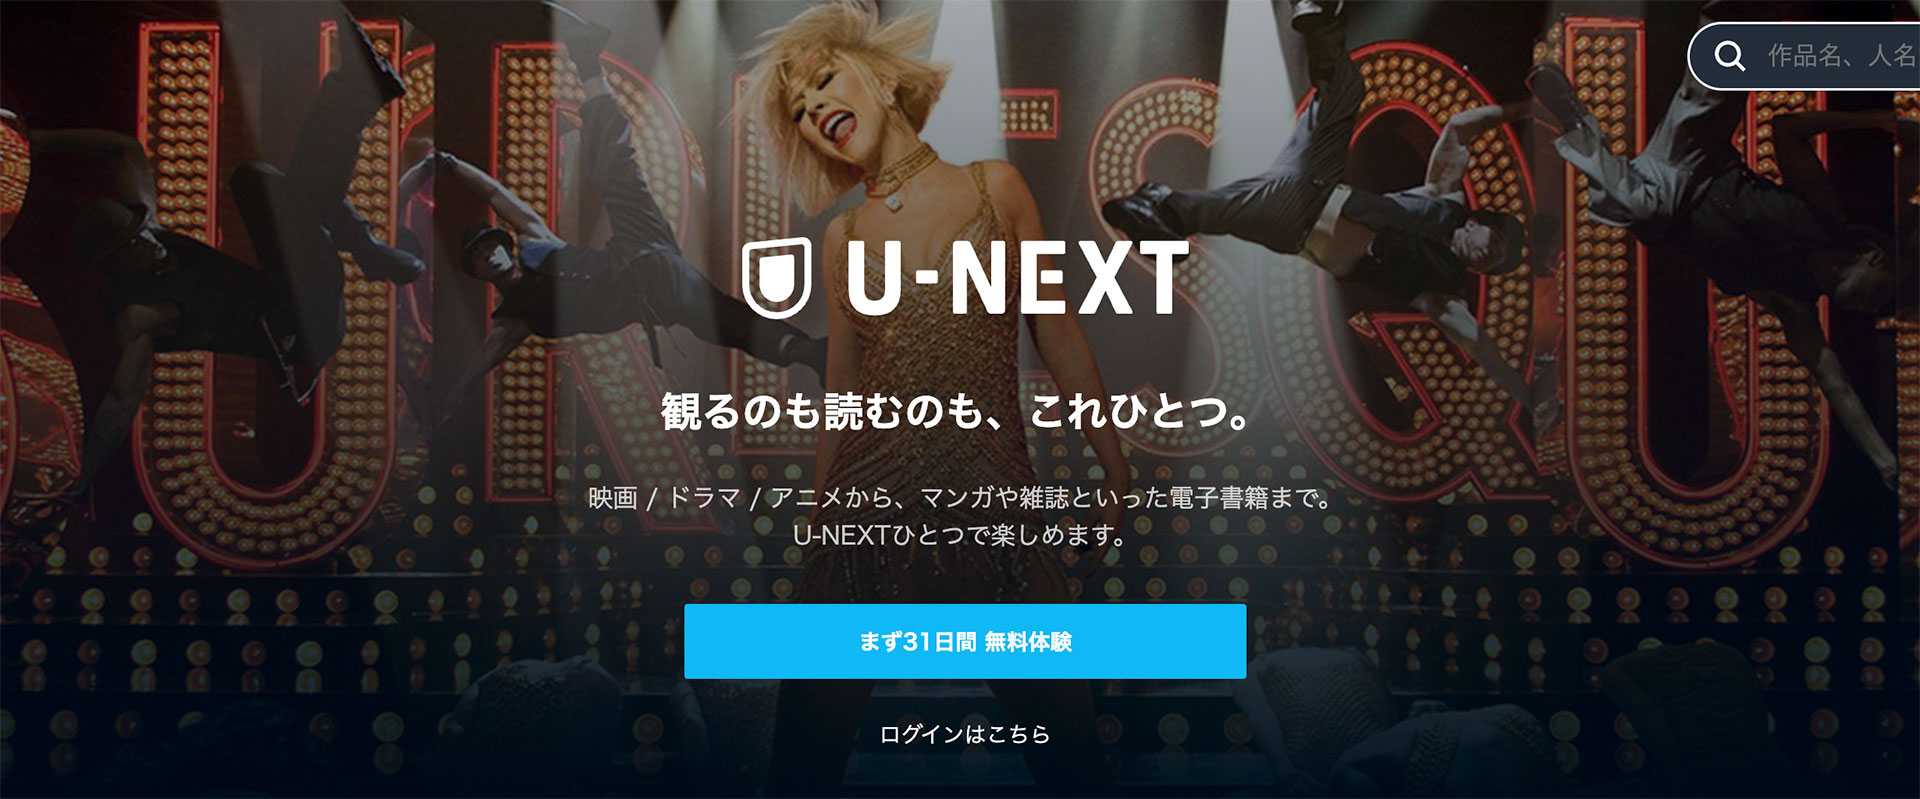 U-NEXTサイト